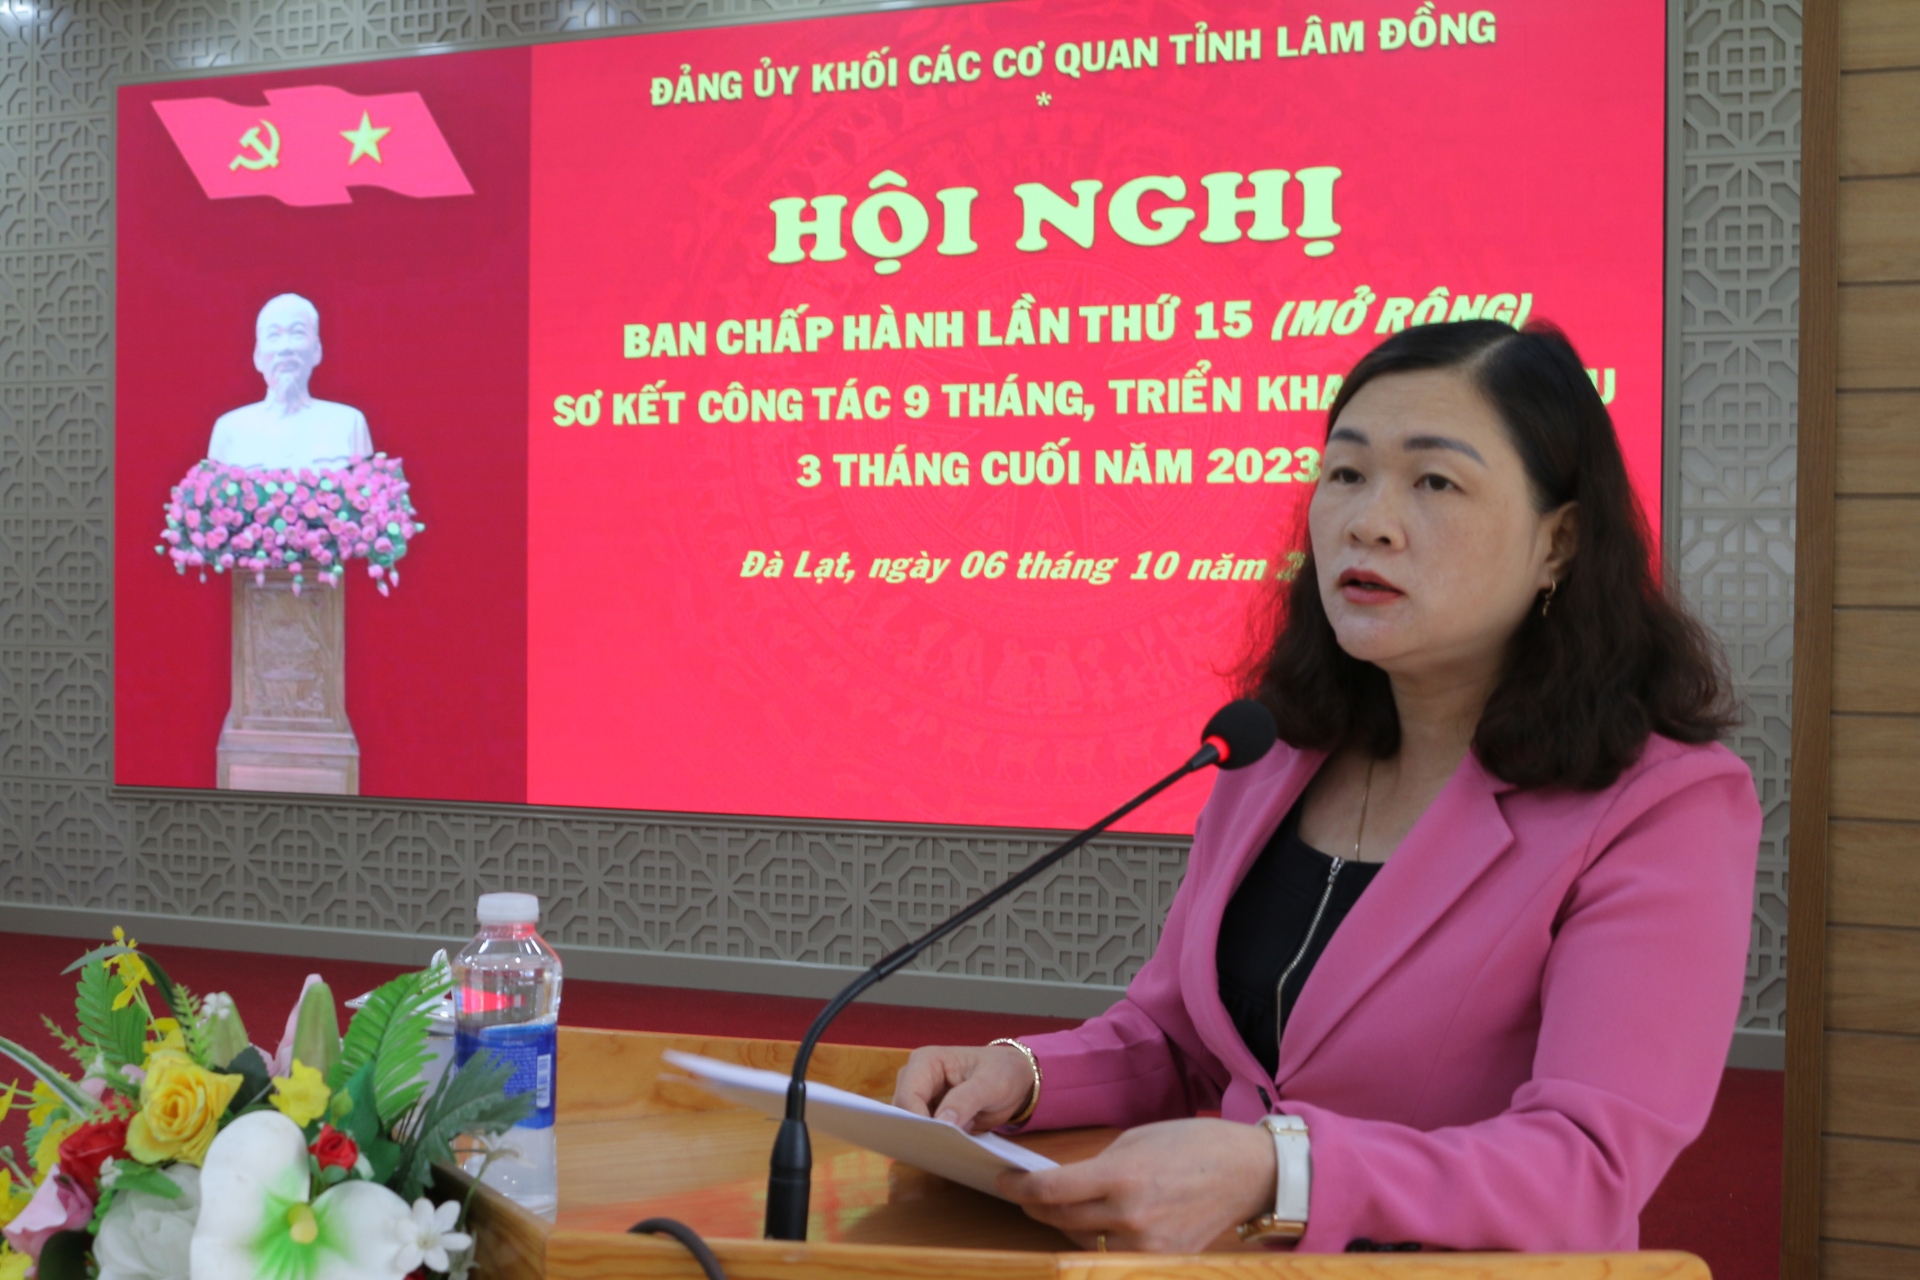 Đồng chí Nguyễn Thị Phương Thảo - Phó Bí thư Thường trực Đảng ủy Khối báo cáo sơ kết công tác 9 tháng và nhiệm vụ trọng tâm 3 tháng cuối năm 2023